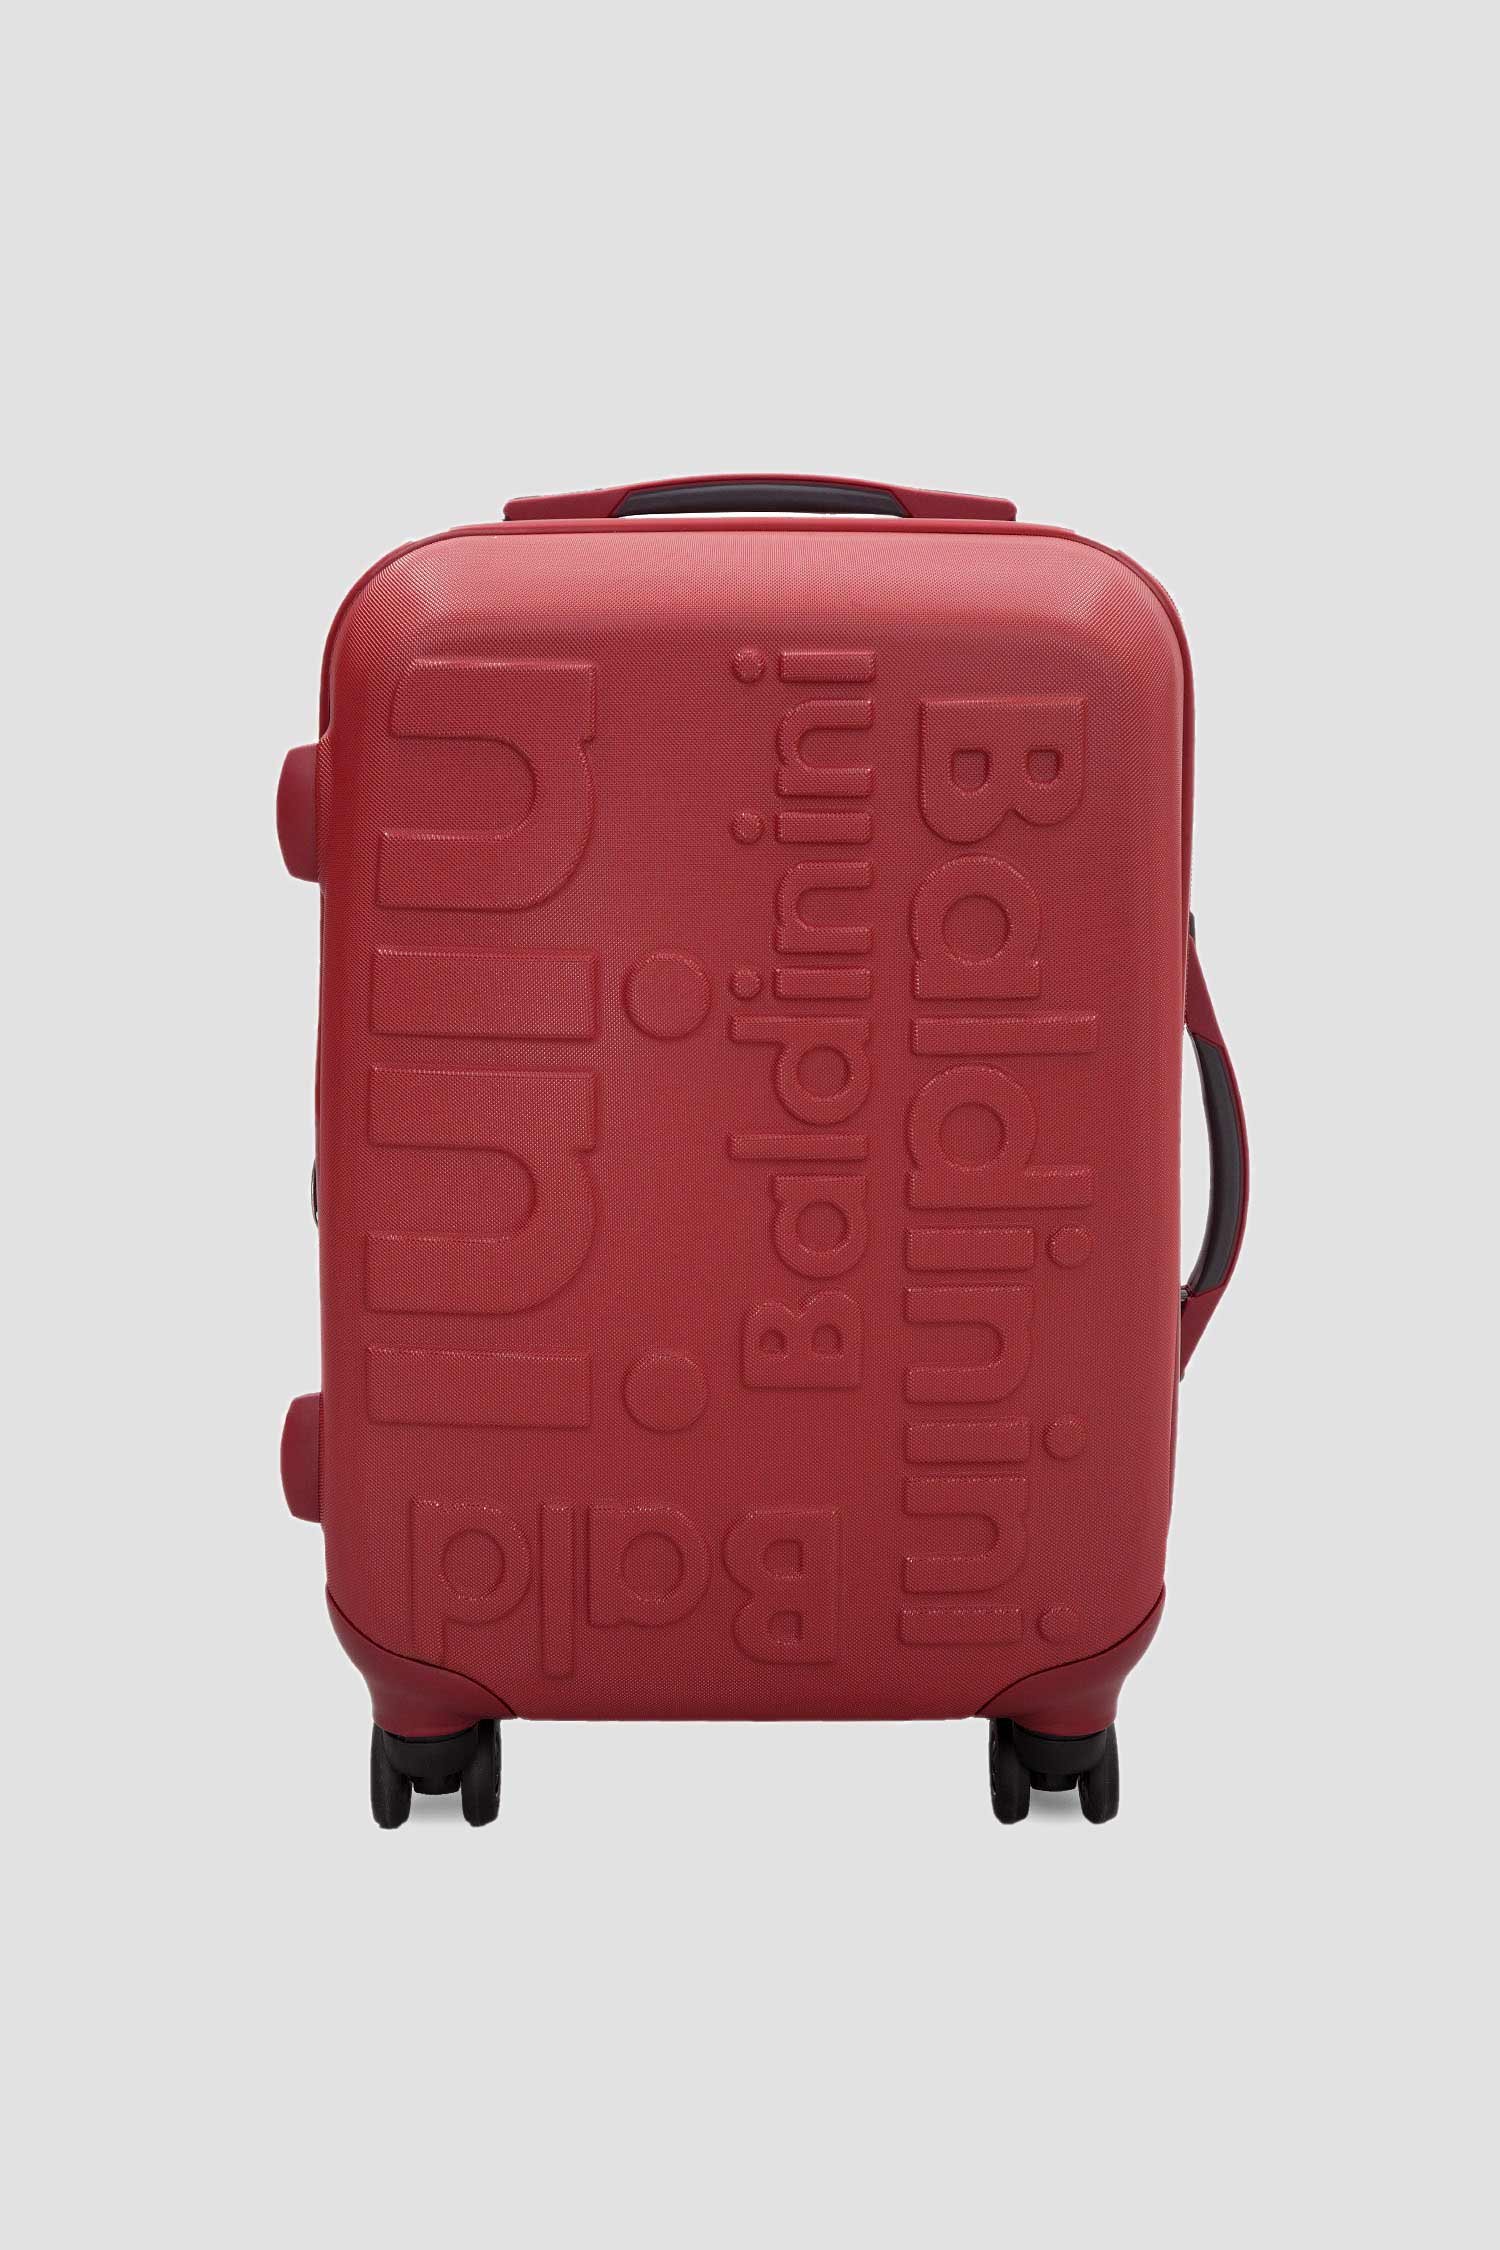 Червона валіза Baldinini SK315SM;70